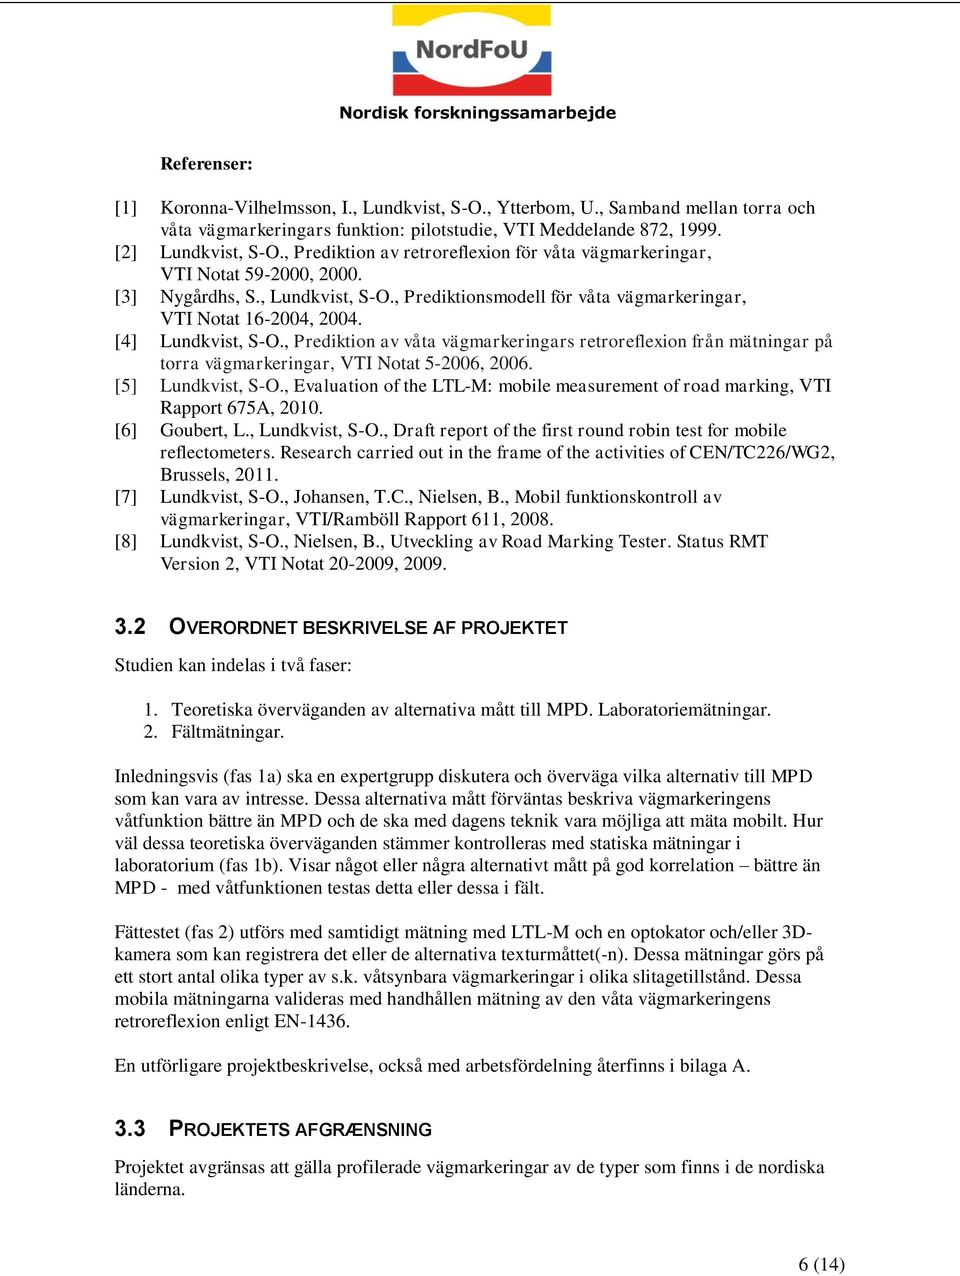 [4] Lundkvist, S-O., Prediktion av våta vägmarkeringars retroreflexion från mätningar på torra vägmarkeringar, VTI Notat 5-2006, 2006. [5] Lundkvist, S-O.